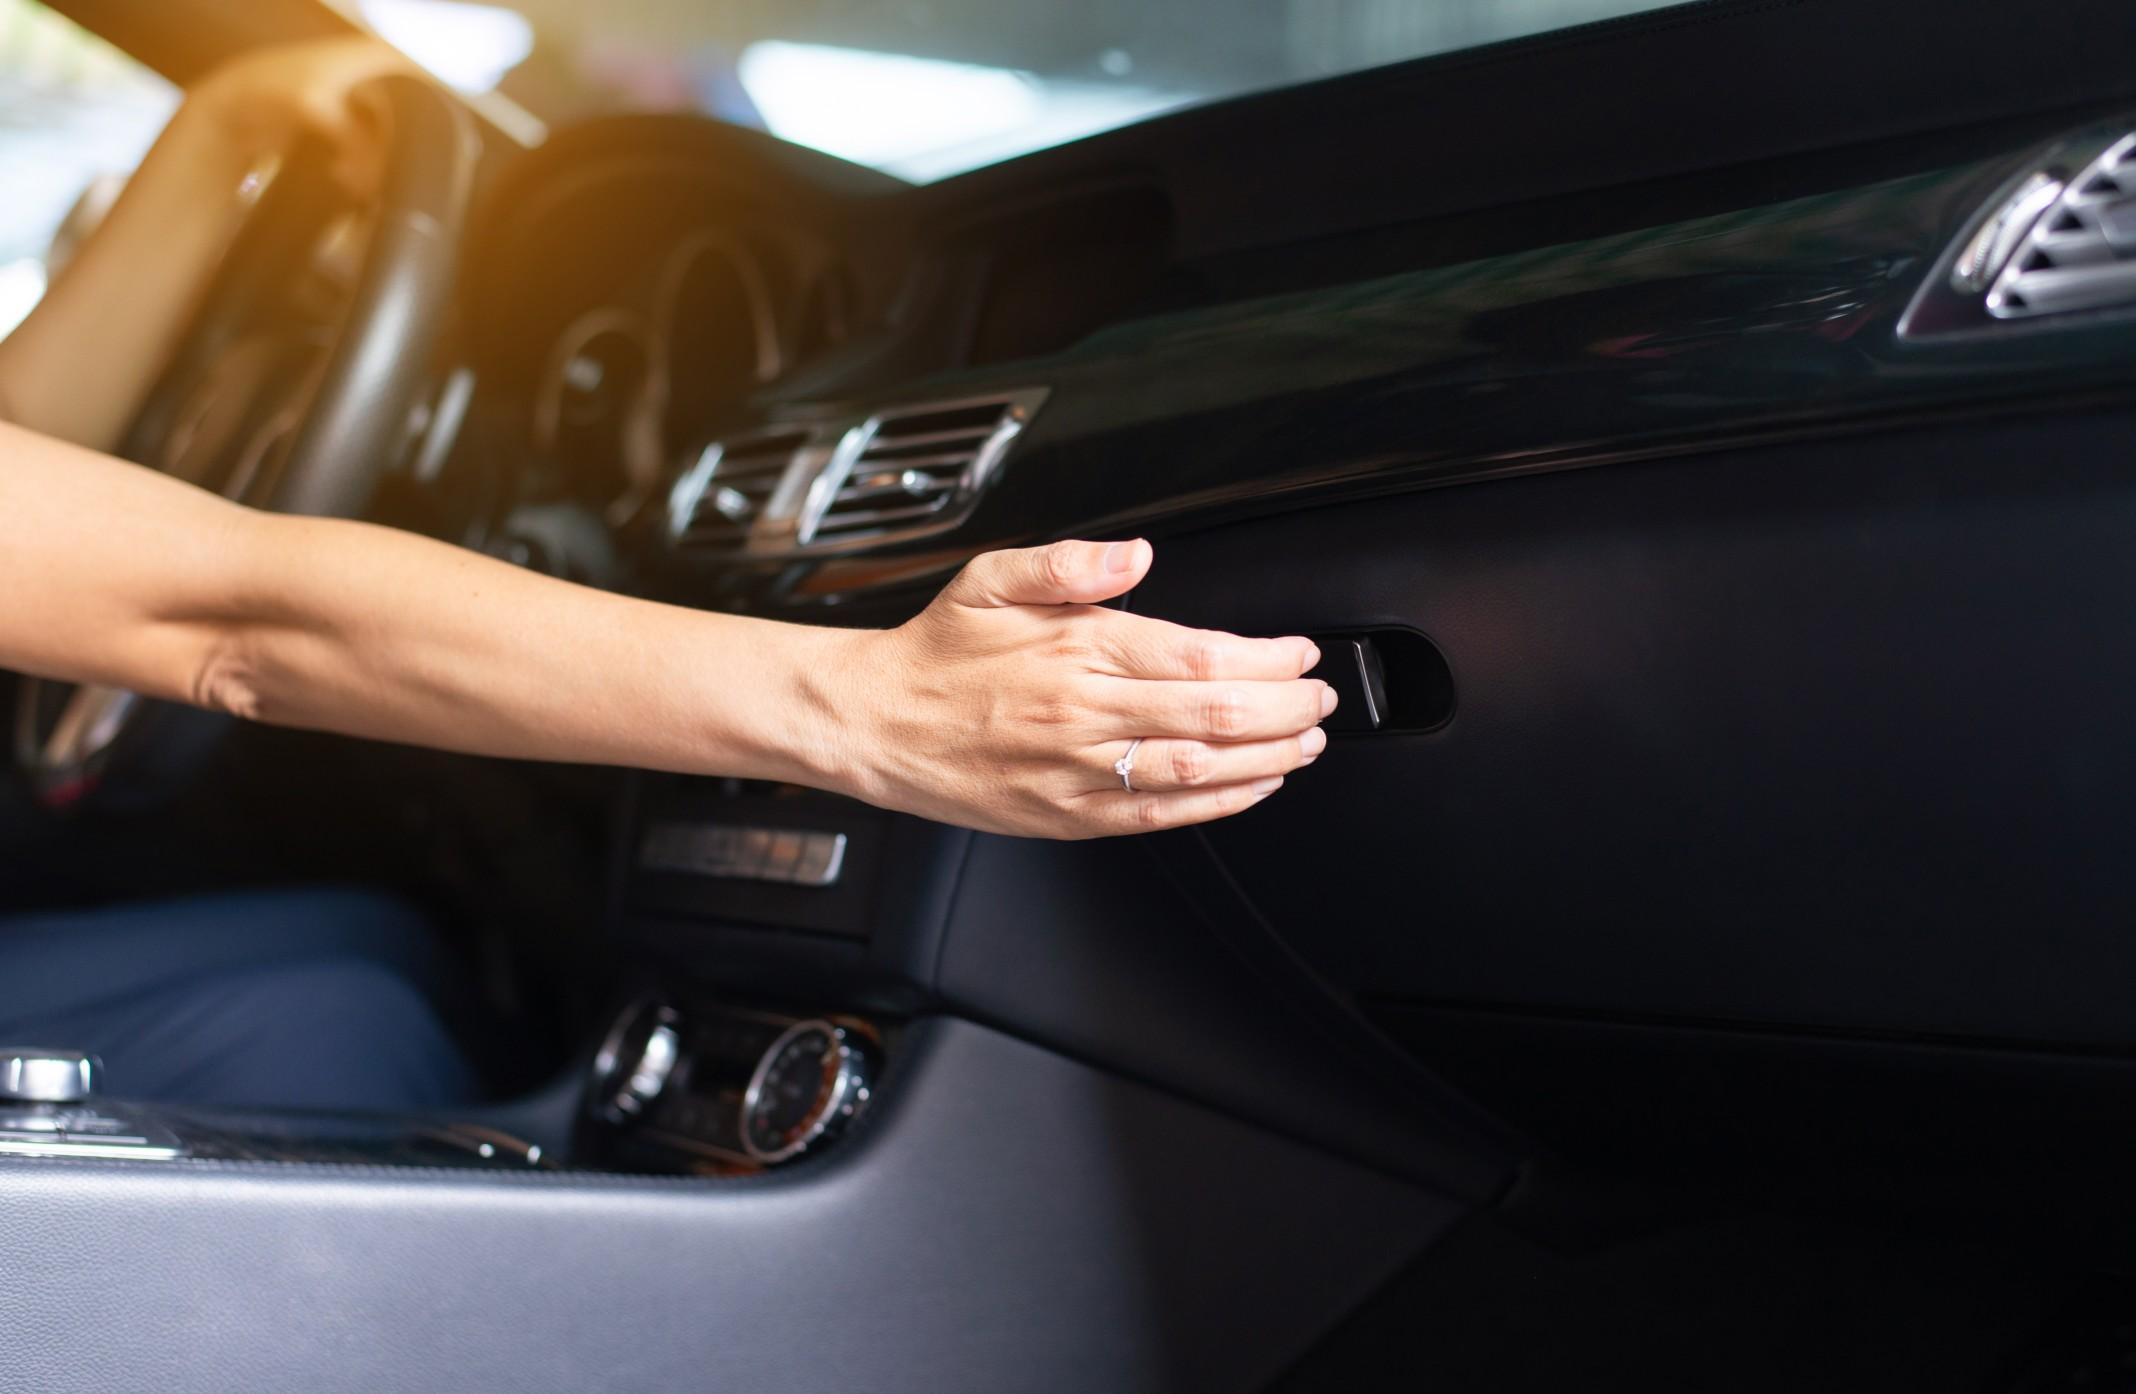 hand reaching for a car's glove box